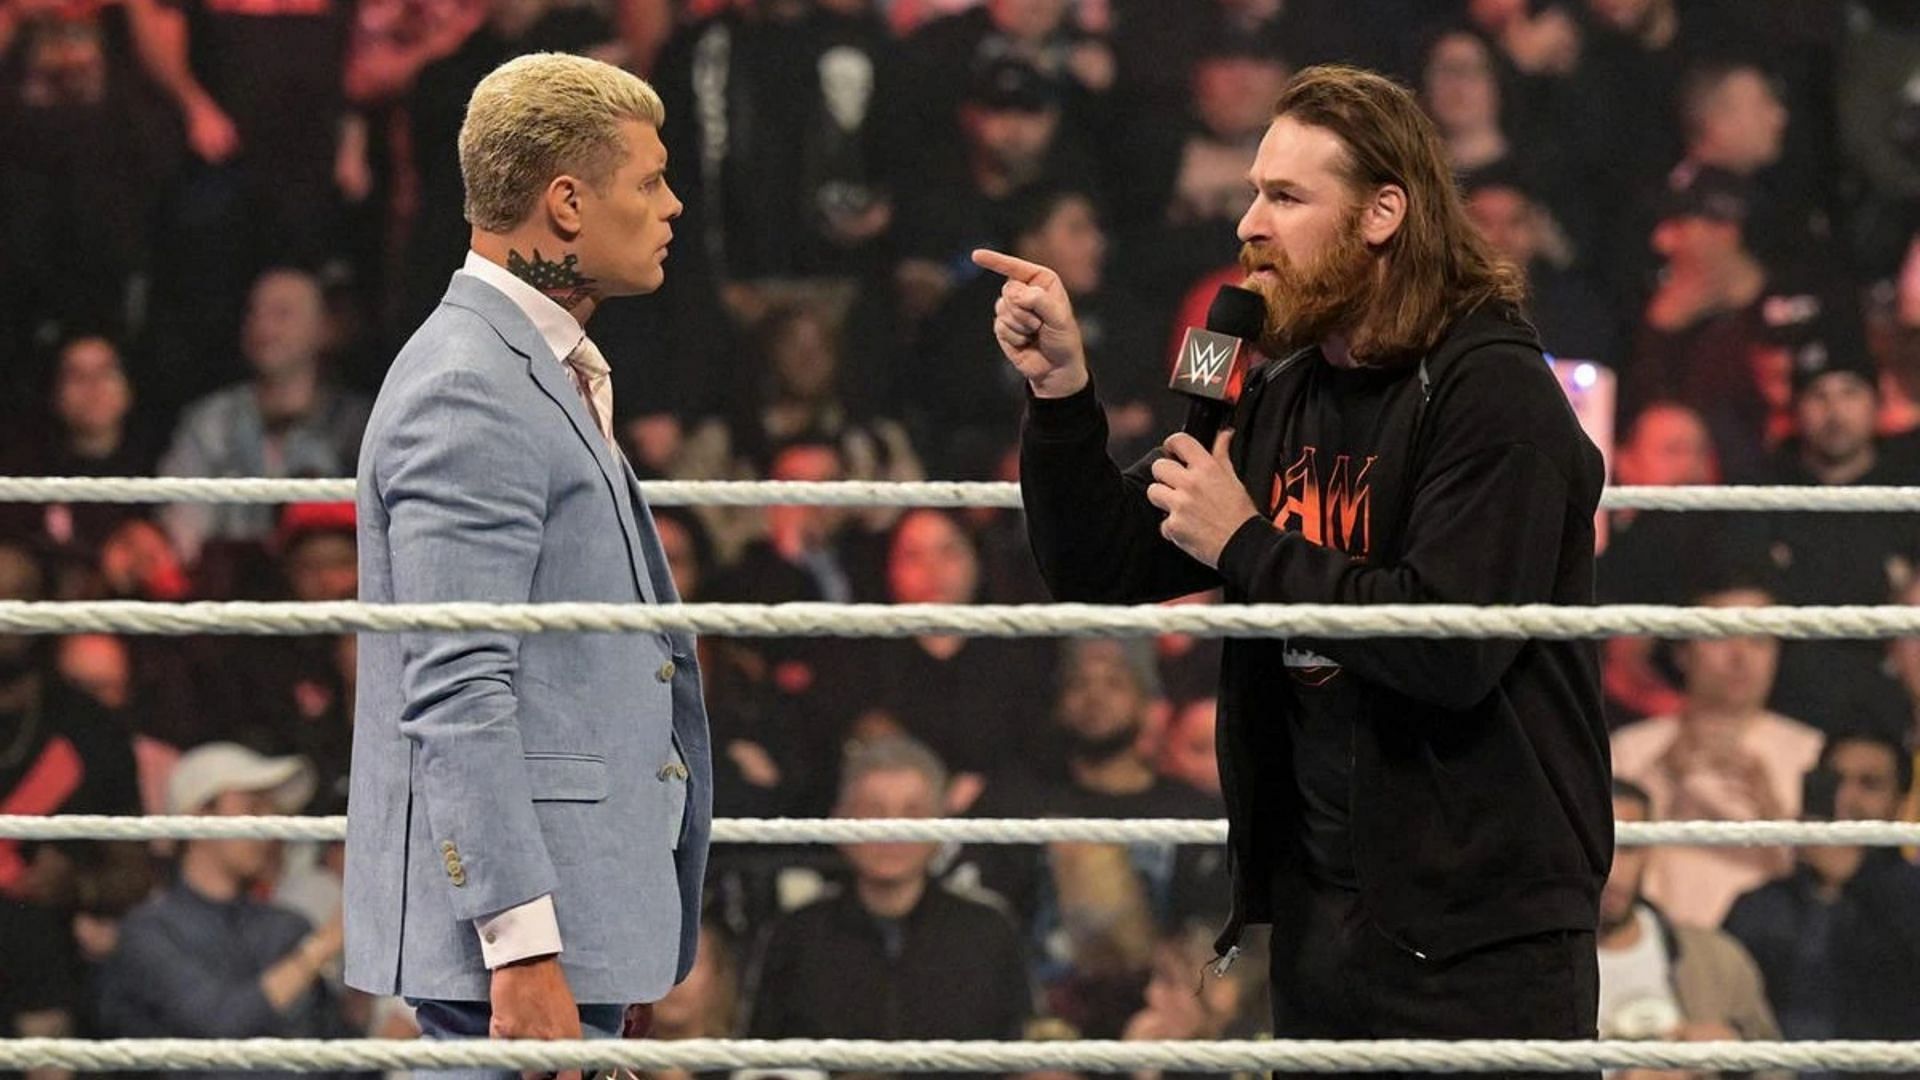 Cody Rhodes and Sami Zayn had a confrontation on WWE RAW